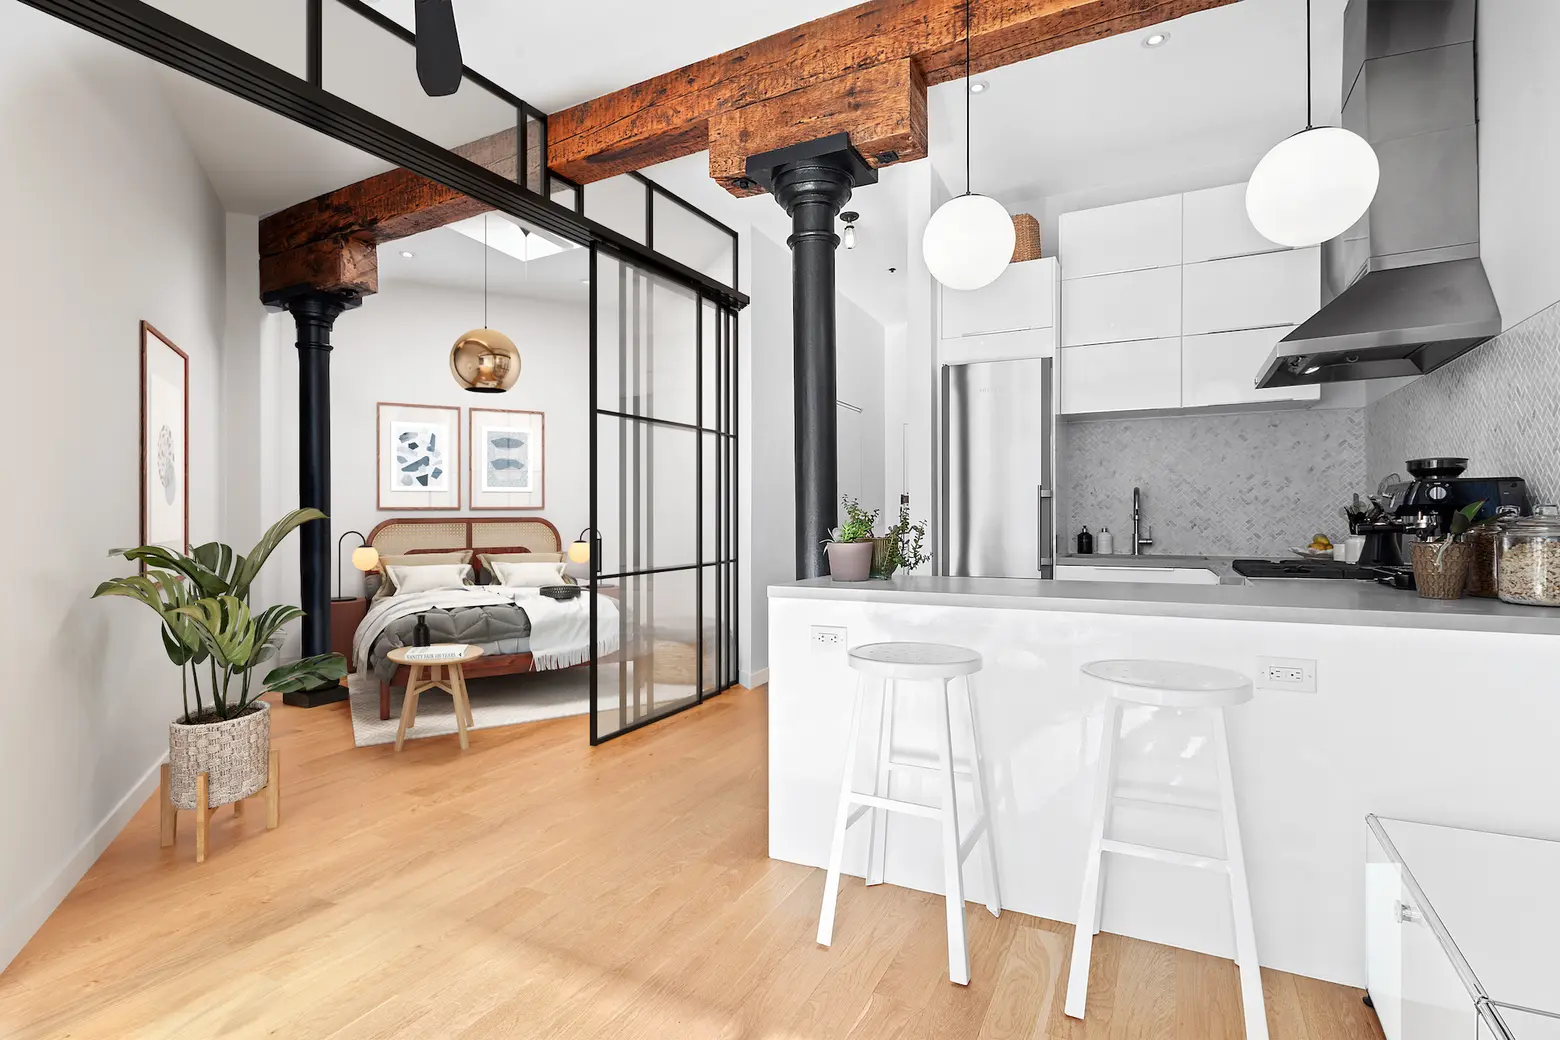 $925K Bleecker Street co-op mixes loft details with modern design